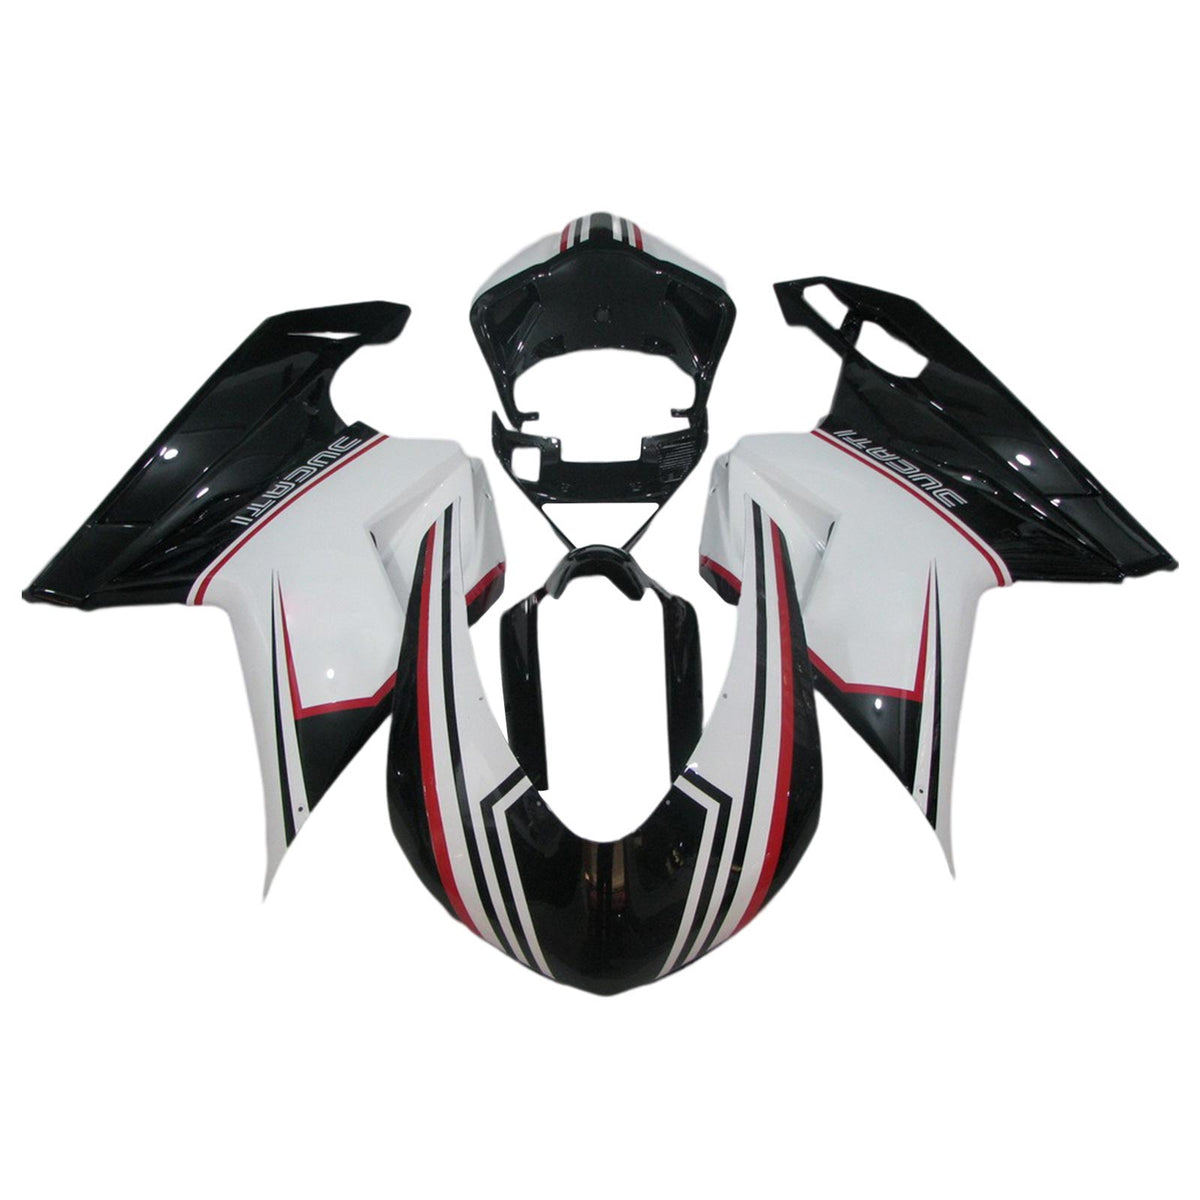 Amotopart 2007-2012 Ducati 1098 1198 848 Kit carena Style2 in bianco e nero